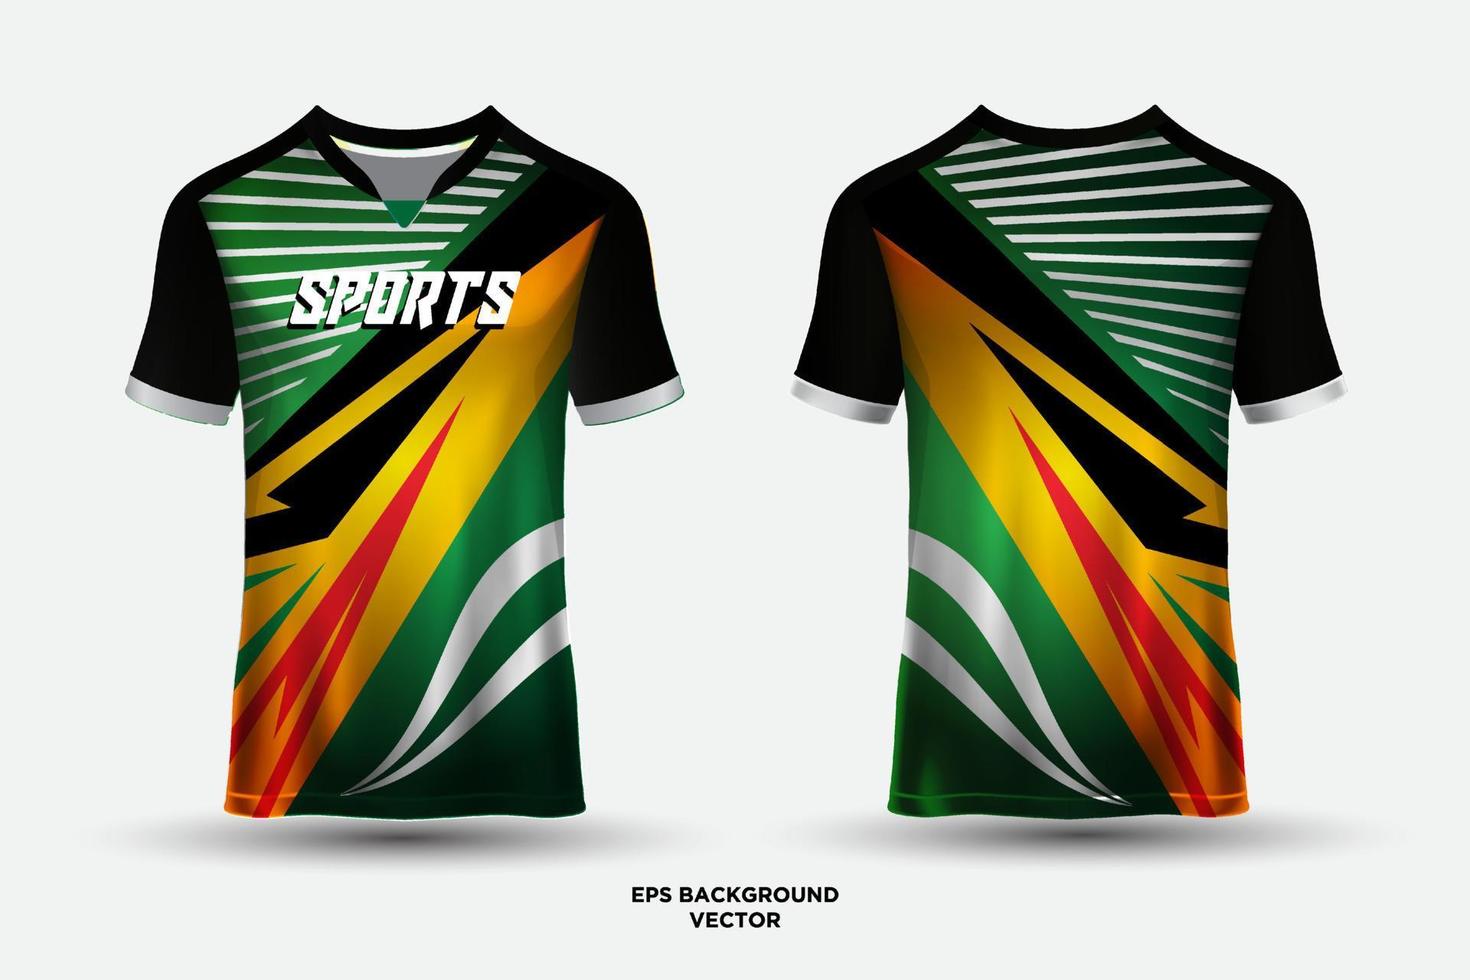 fantastiska och trendiga t-shirtsporter i designtröja som lämpar sig för racing, fotboll, e-sporter vektor